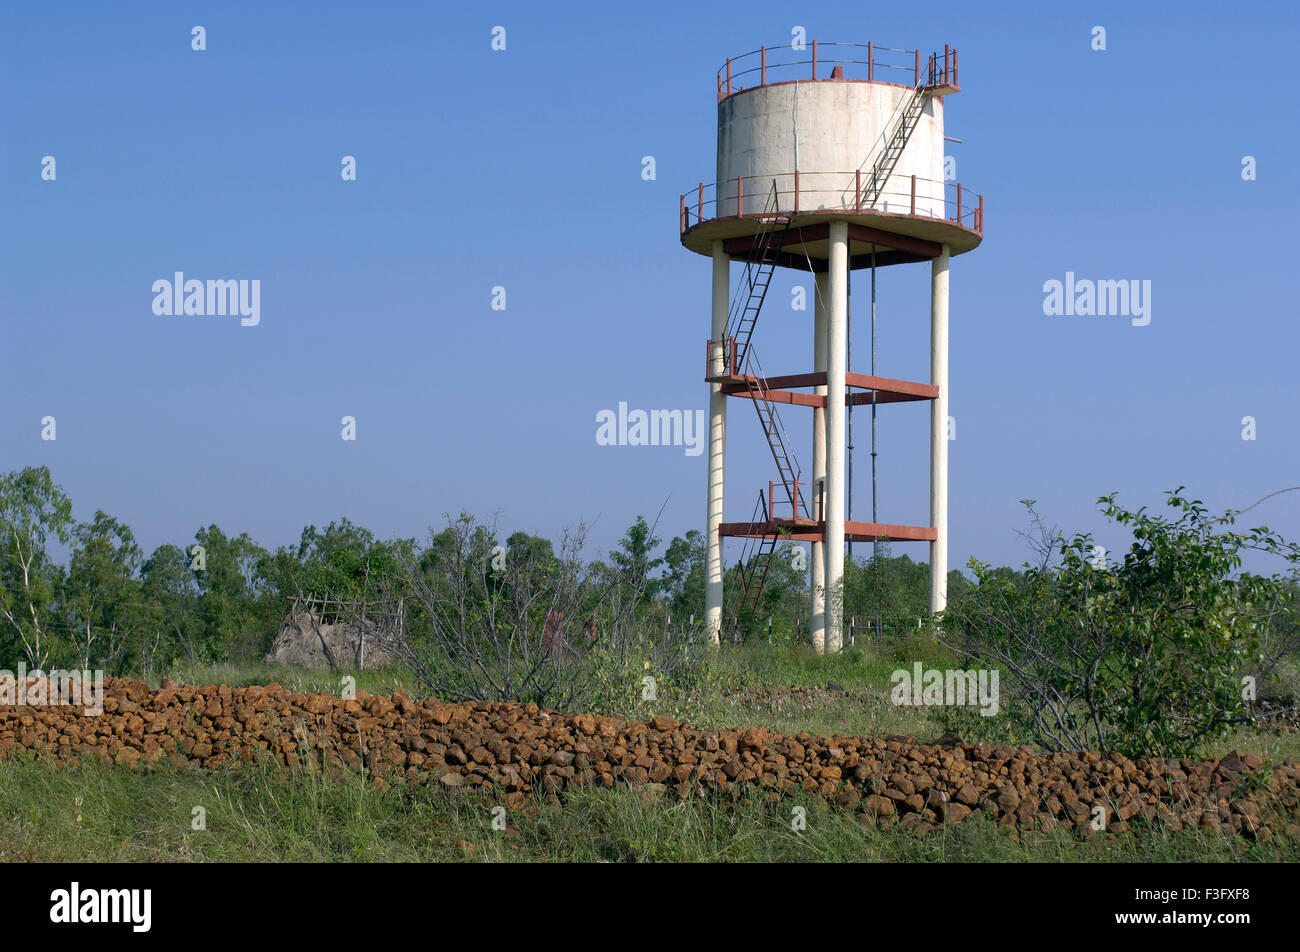 Sobrecarga Swajaldhara capacidad 75000 litros de agua potable a cerca de Pune Ralegan Siddhi ; ; Maharashtra India Foto de stock